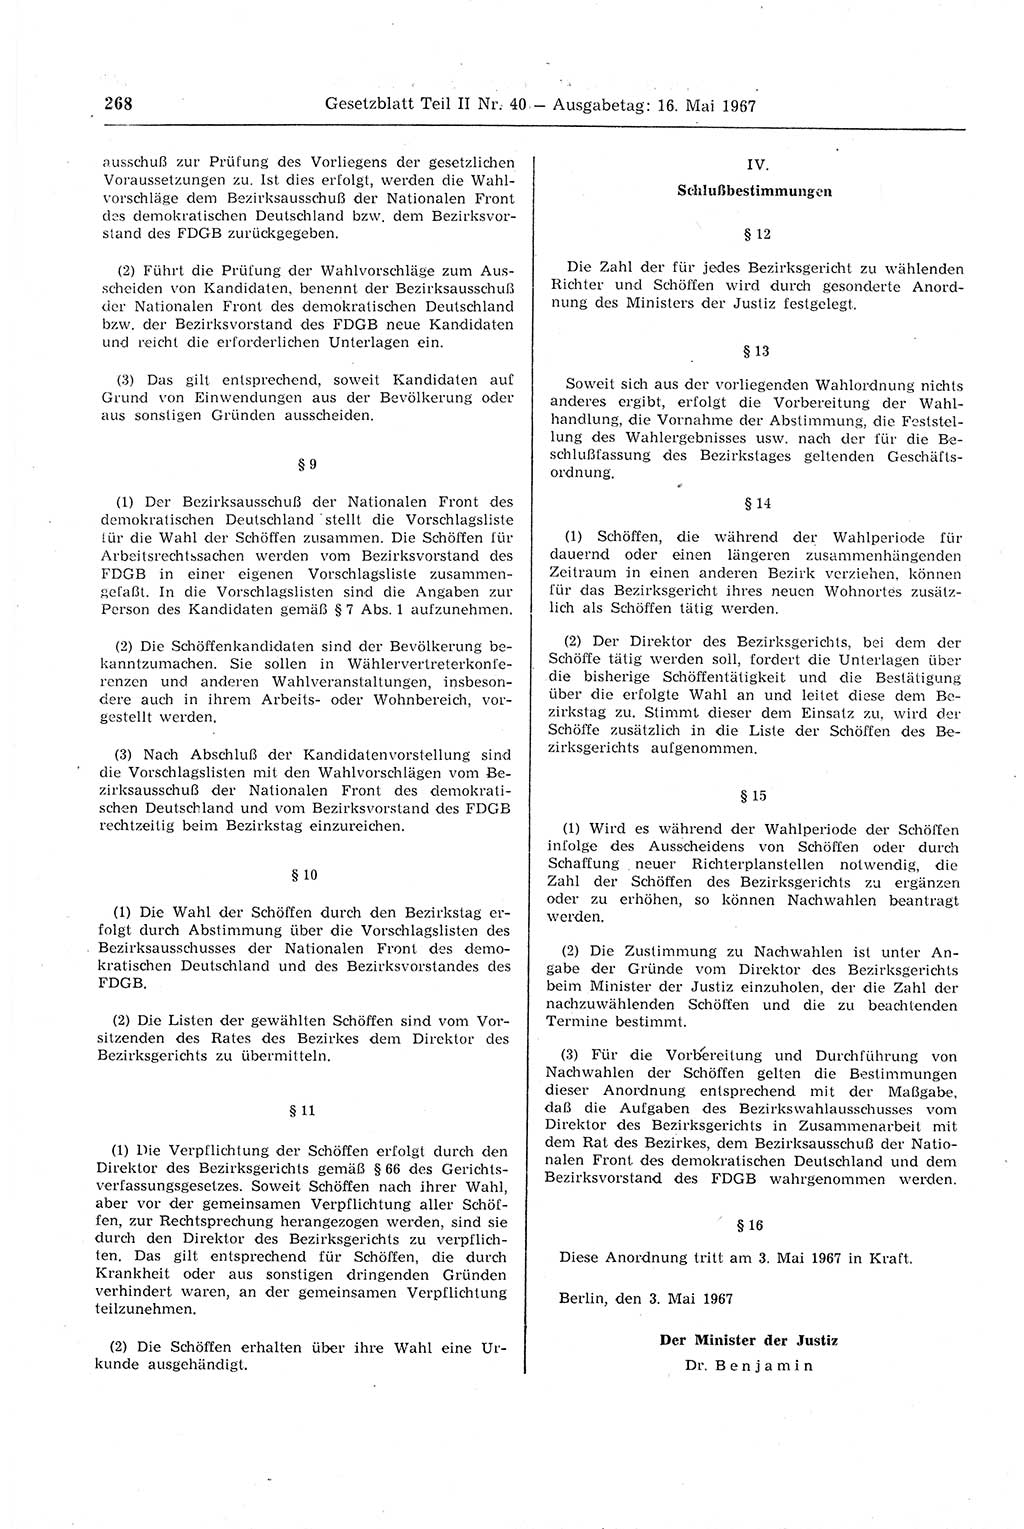 Gesetzblatt (GBl.) der Deutschen Demokratischen Republik (DDR) Teil ⅠⅠ 1967, Seite 268 (GBl. DDR ⅠⅠ 1967, S. 268)